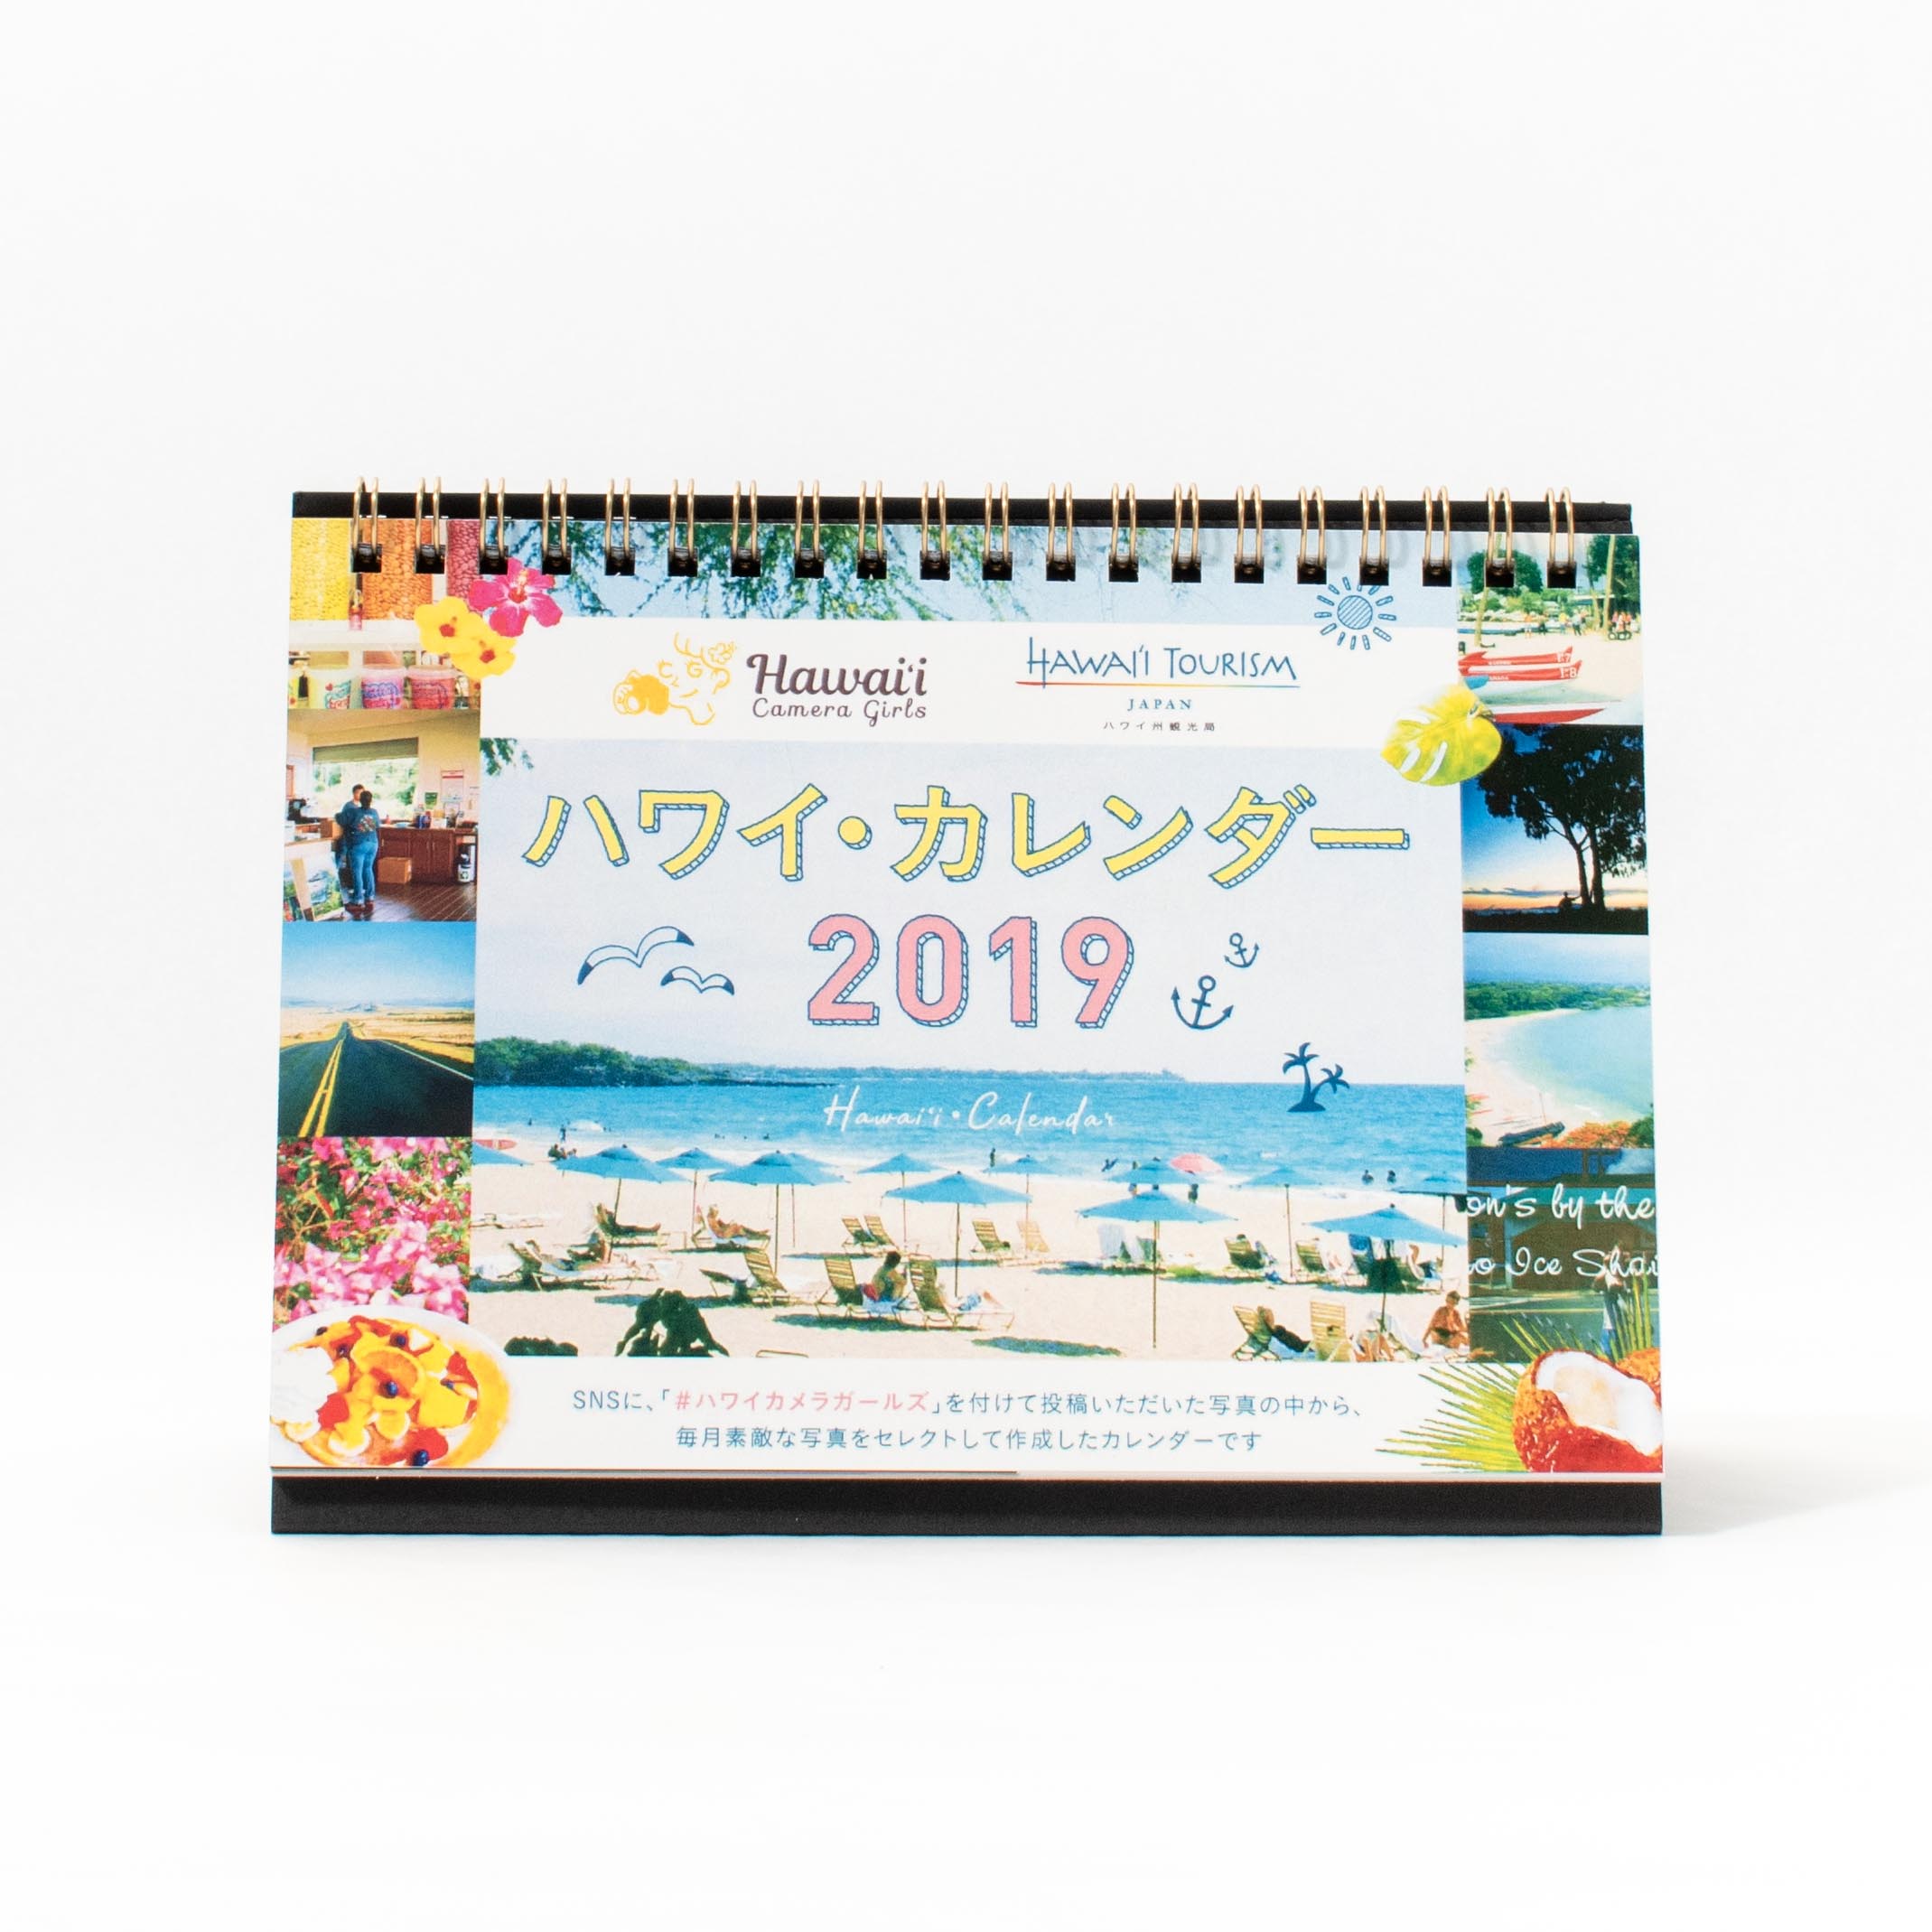 「ハワイ州観光局 様」製作のオリジナルカレンダー